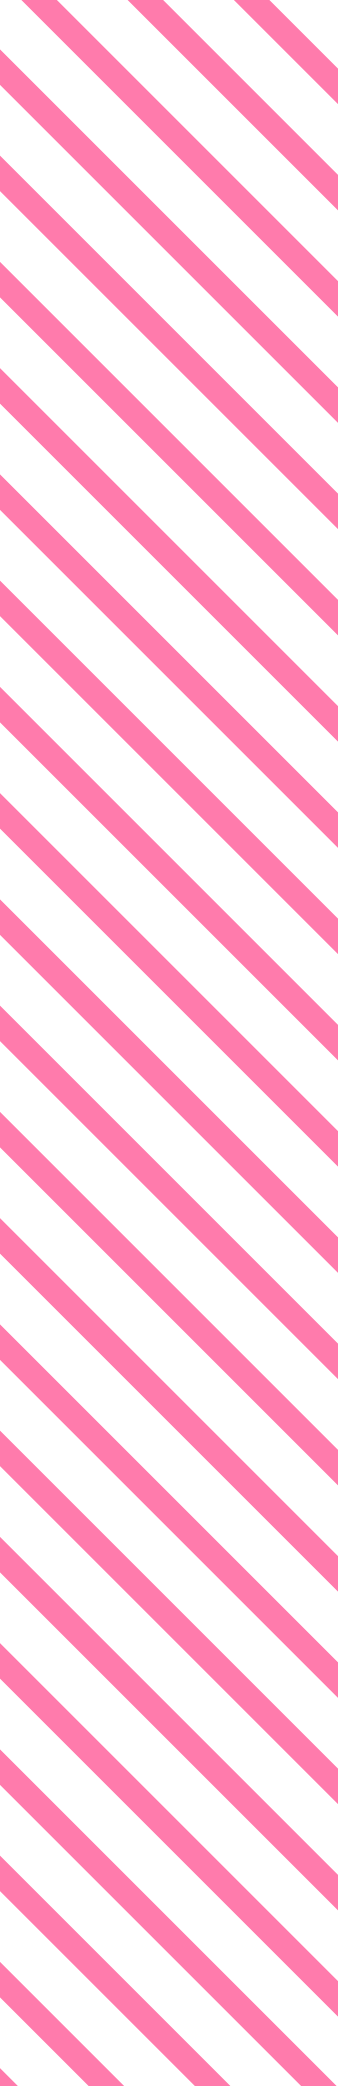 stripes-01